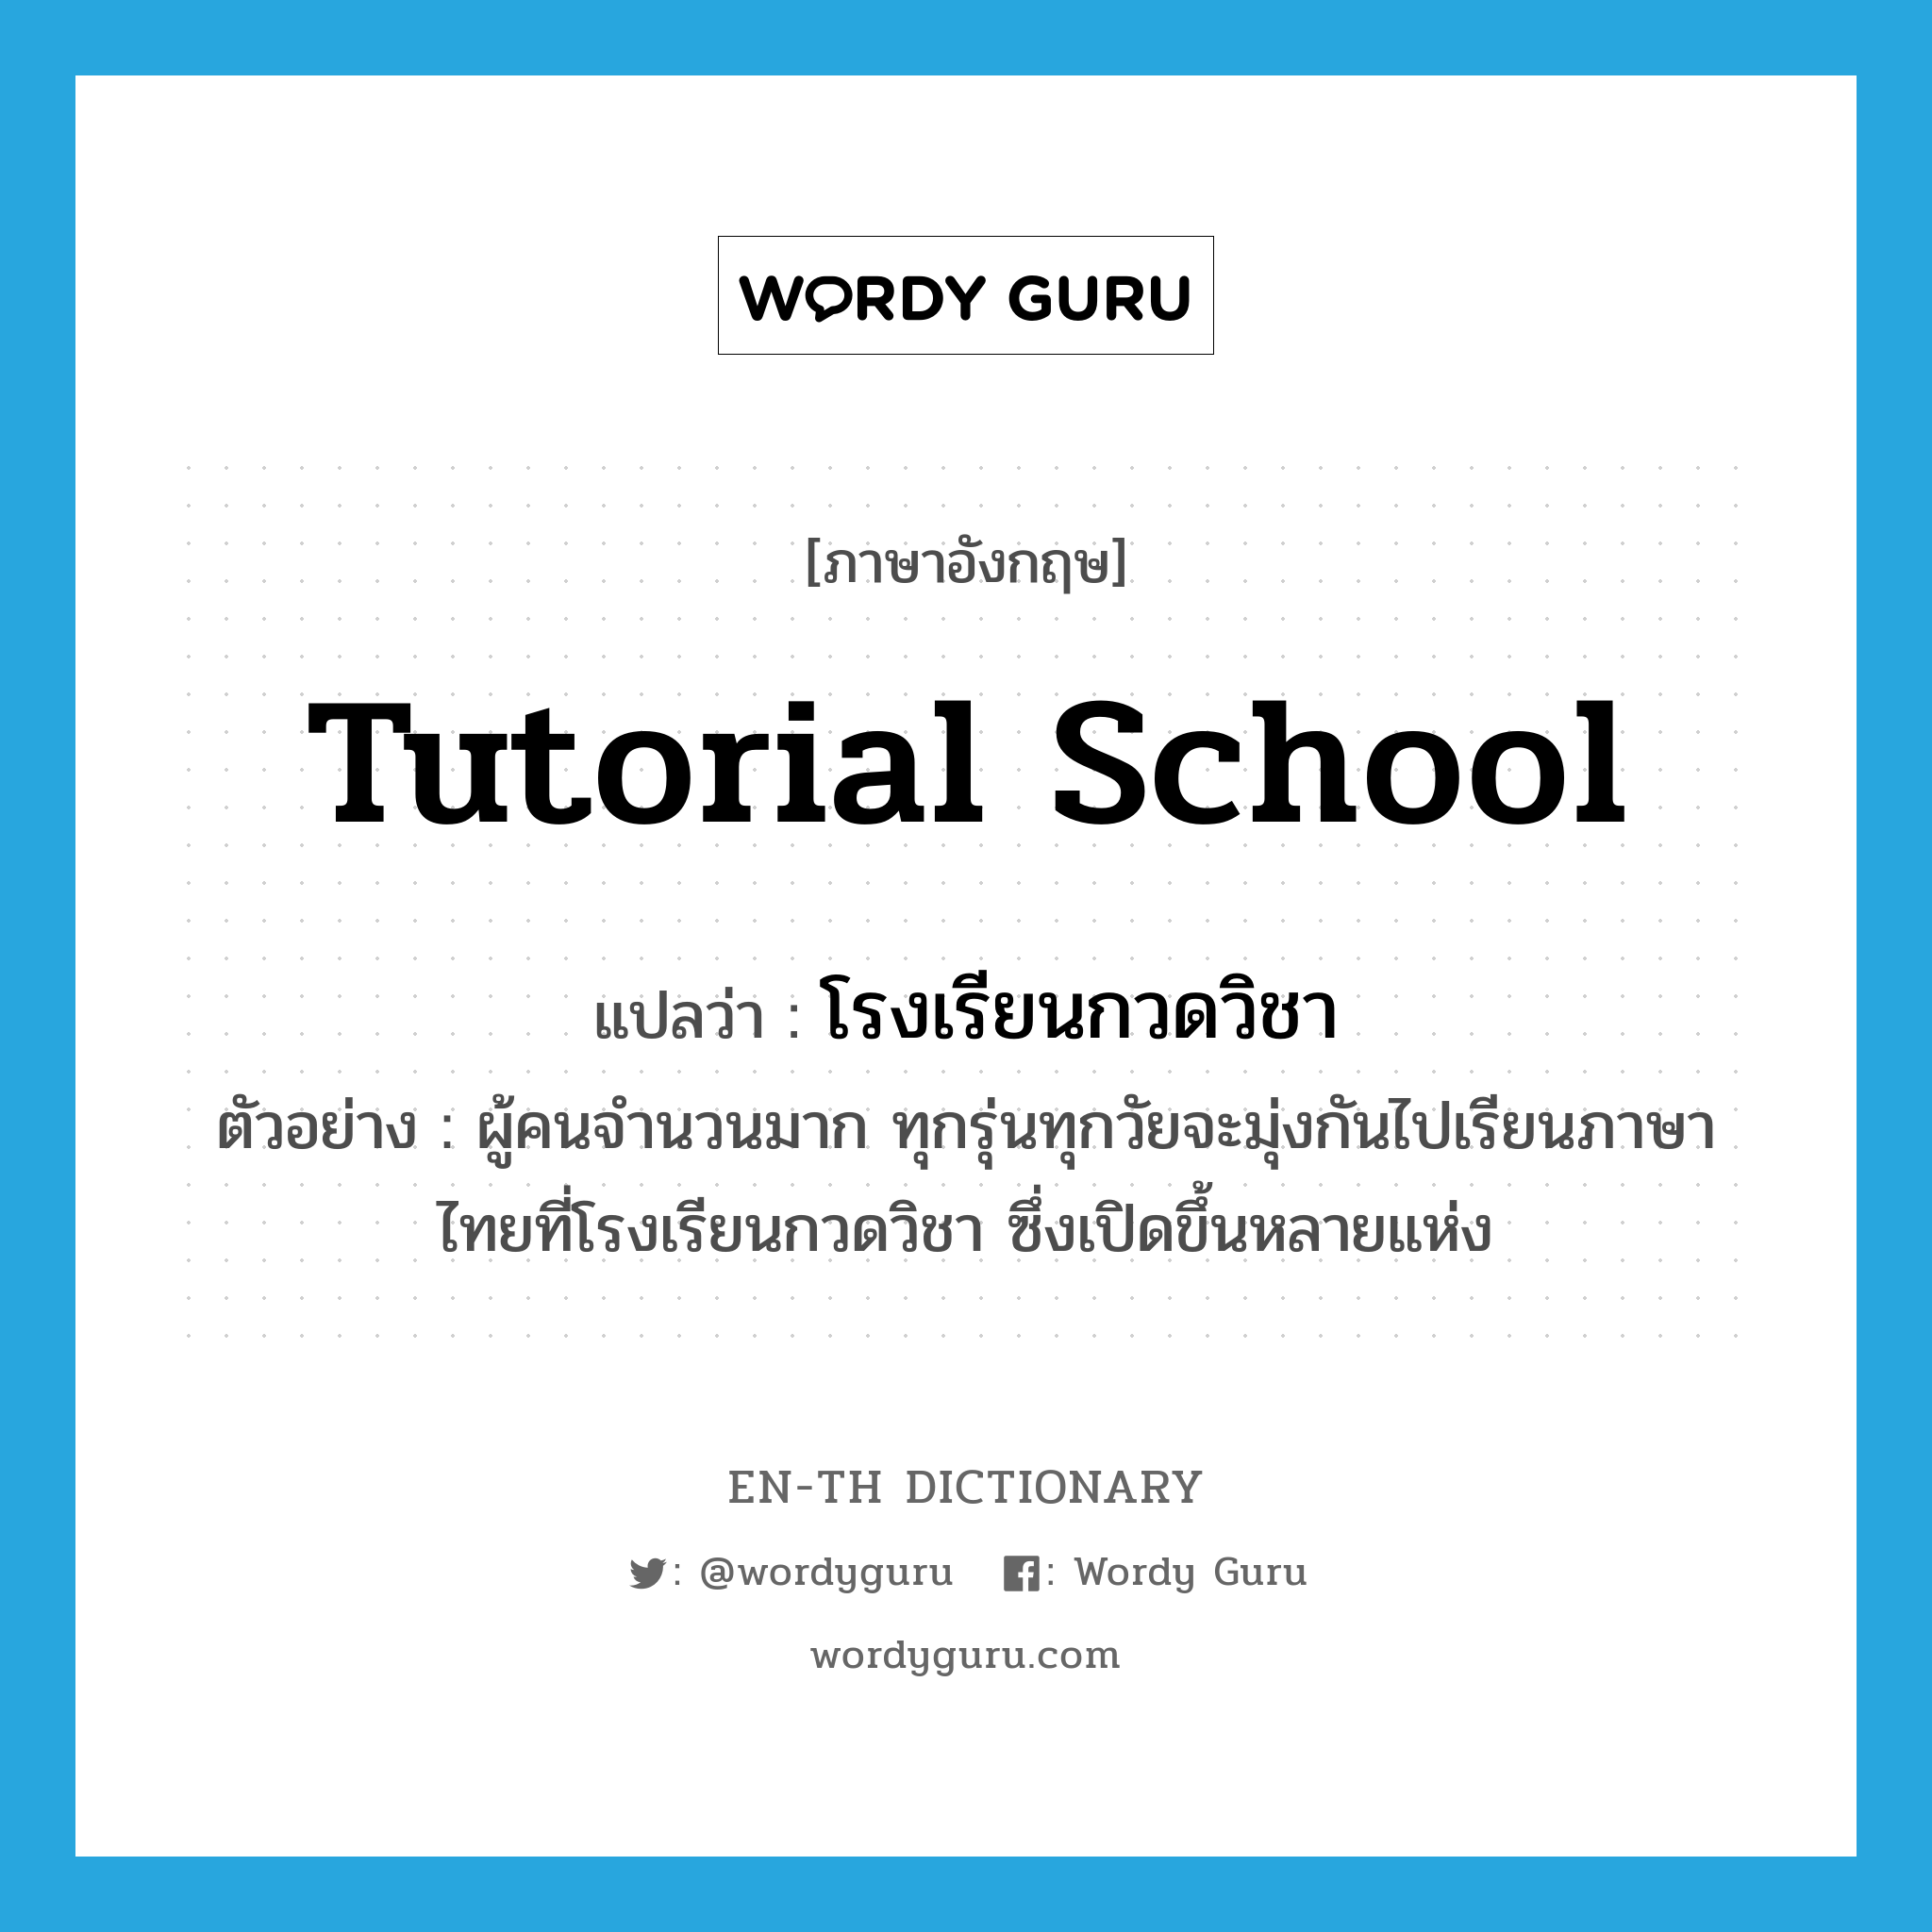 tutorial school แปลว่า?, คำศัพท์ภาษาอังกฤษ tutorial school แปลว่า โรงเรียนกวดวิชา ประเภท N ตัวอย่าง ผู้คนจำนวนมาก ทุกรุ่นทุกวัยจะมุ่งกันไปเรียนภาษาไทยที่โรงเรียนกวดวิชา ซึ่งเปิดขึ้นหลายแห่ง หมวด N